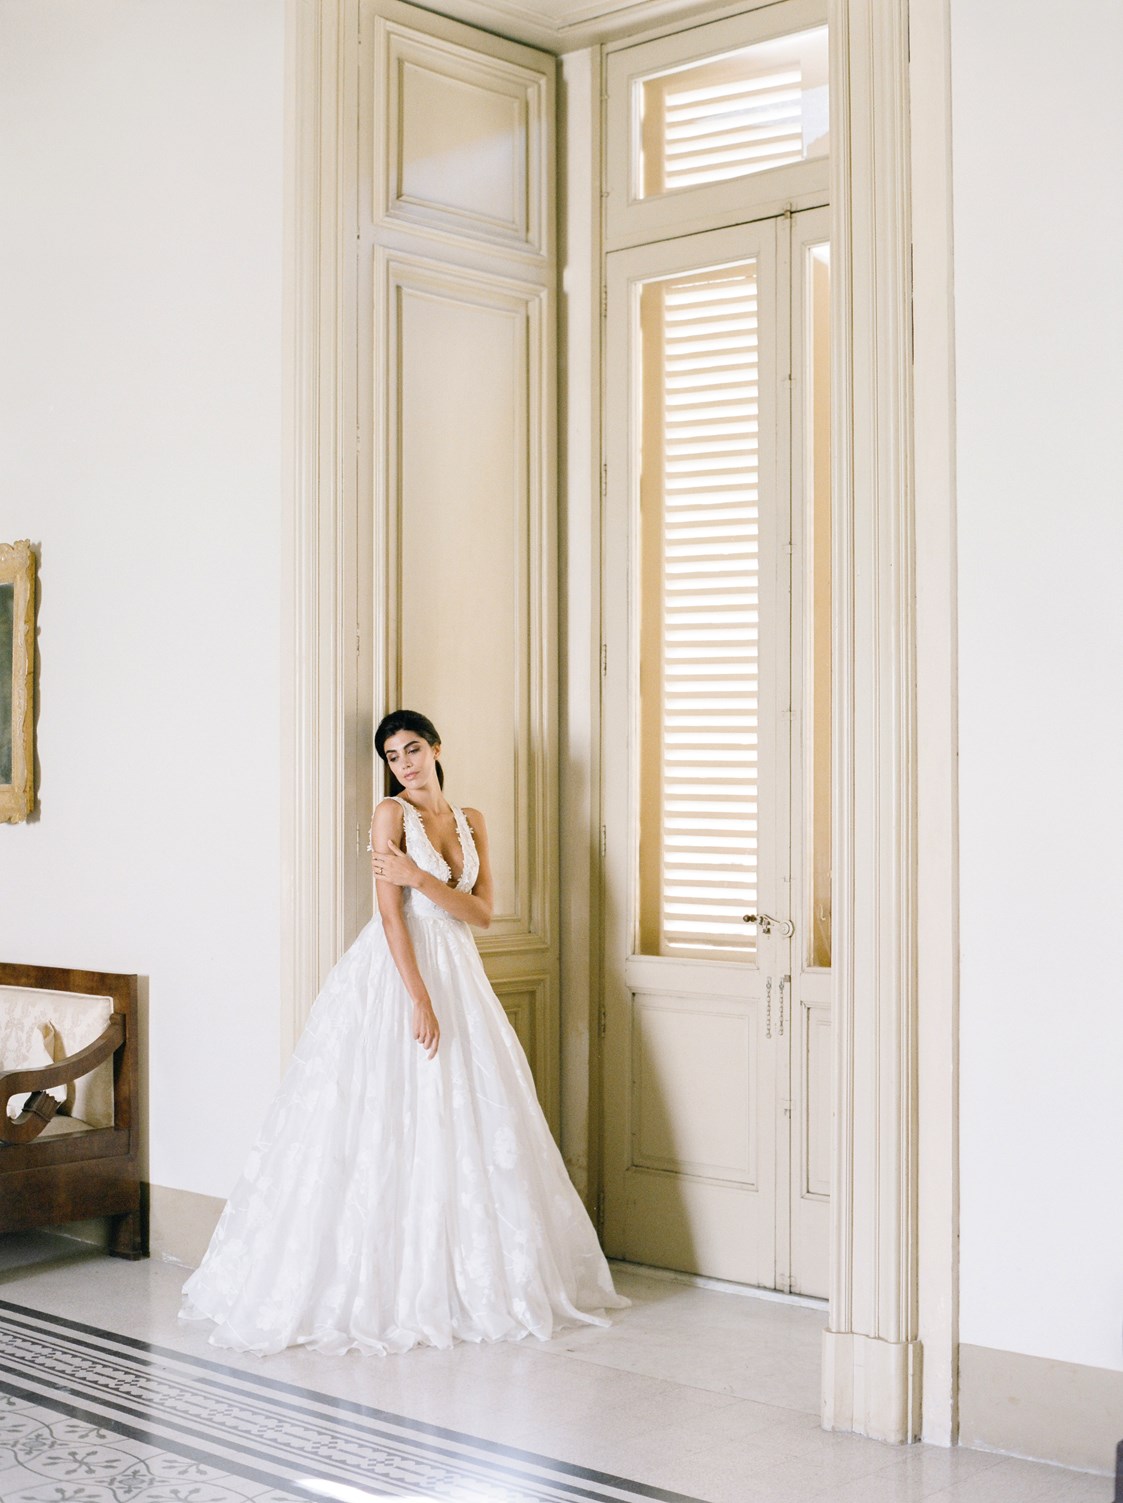 Hochzeitsfotograf: Brautshooting in einem Palazzo - Melanie Nedelko - timeless storytelling